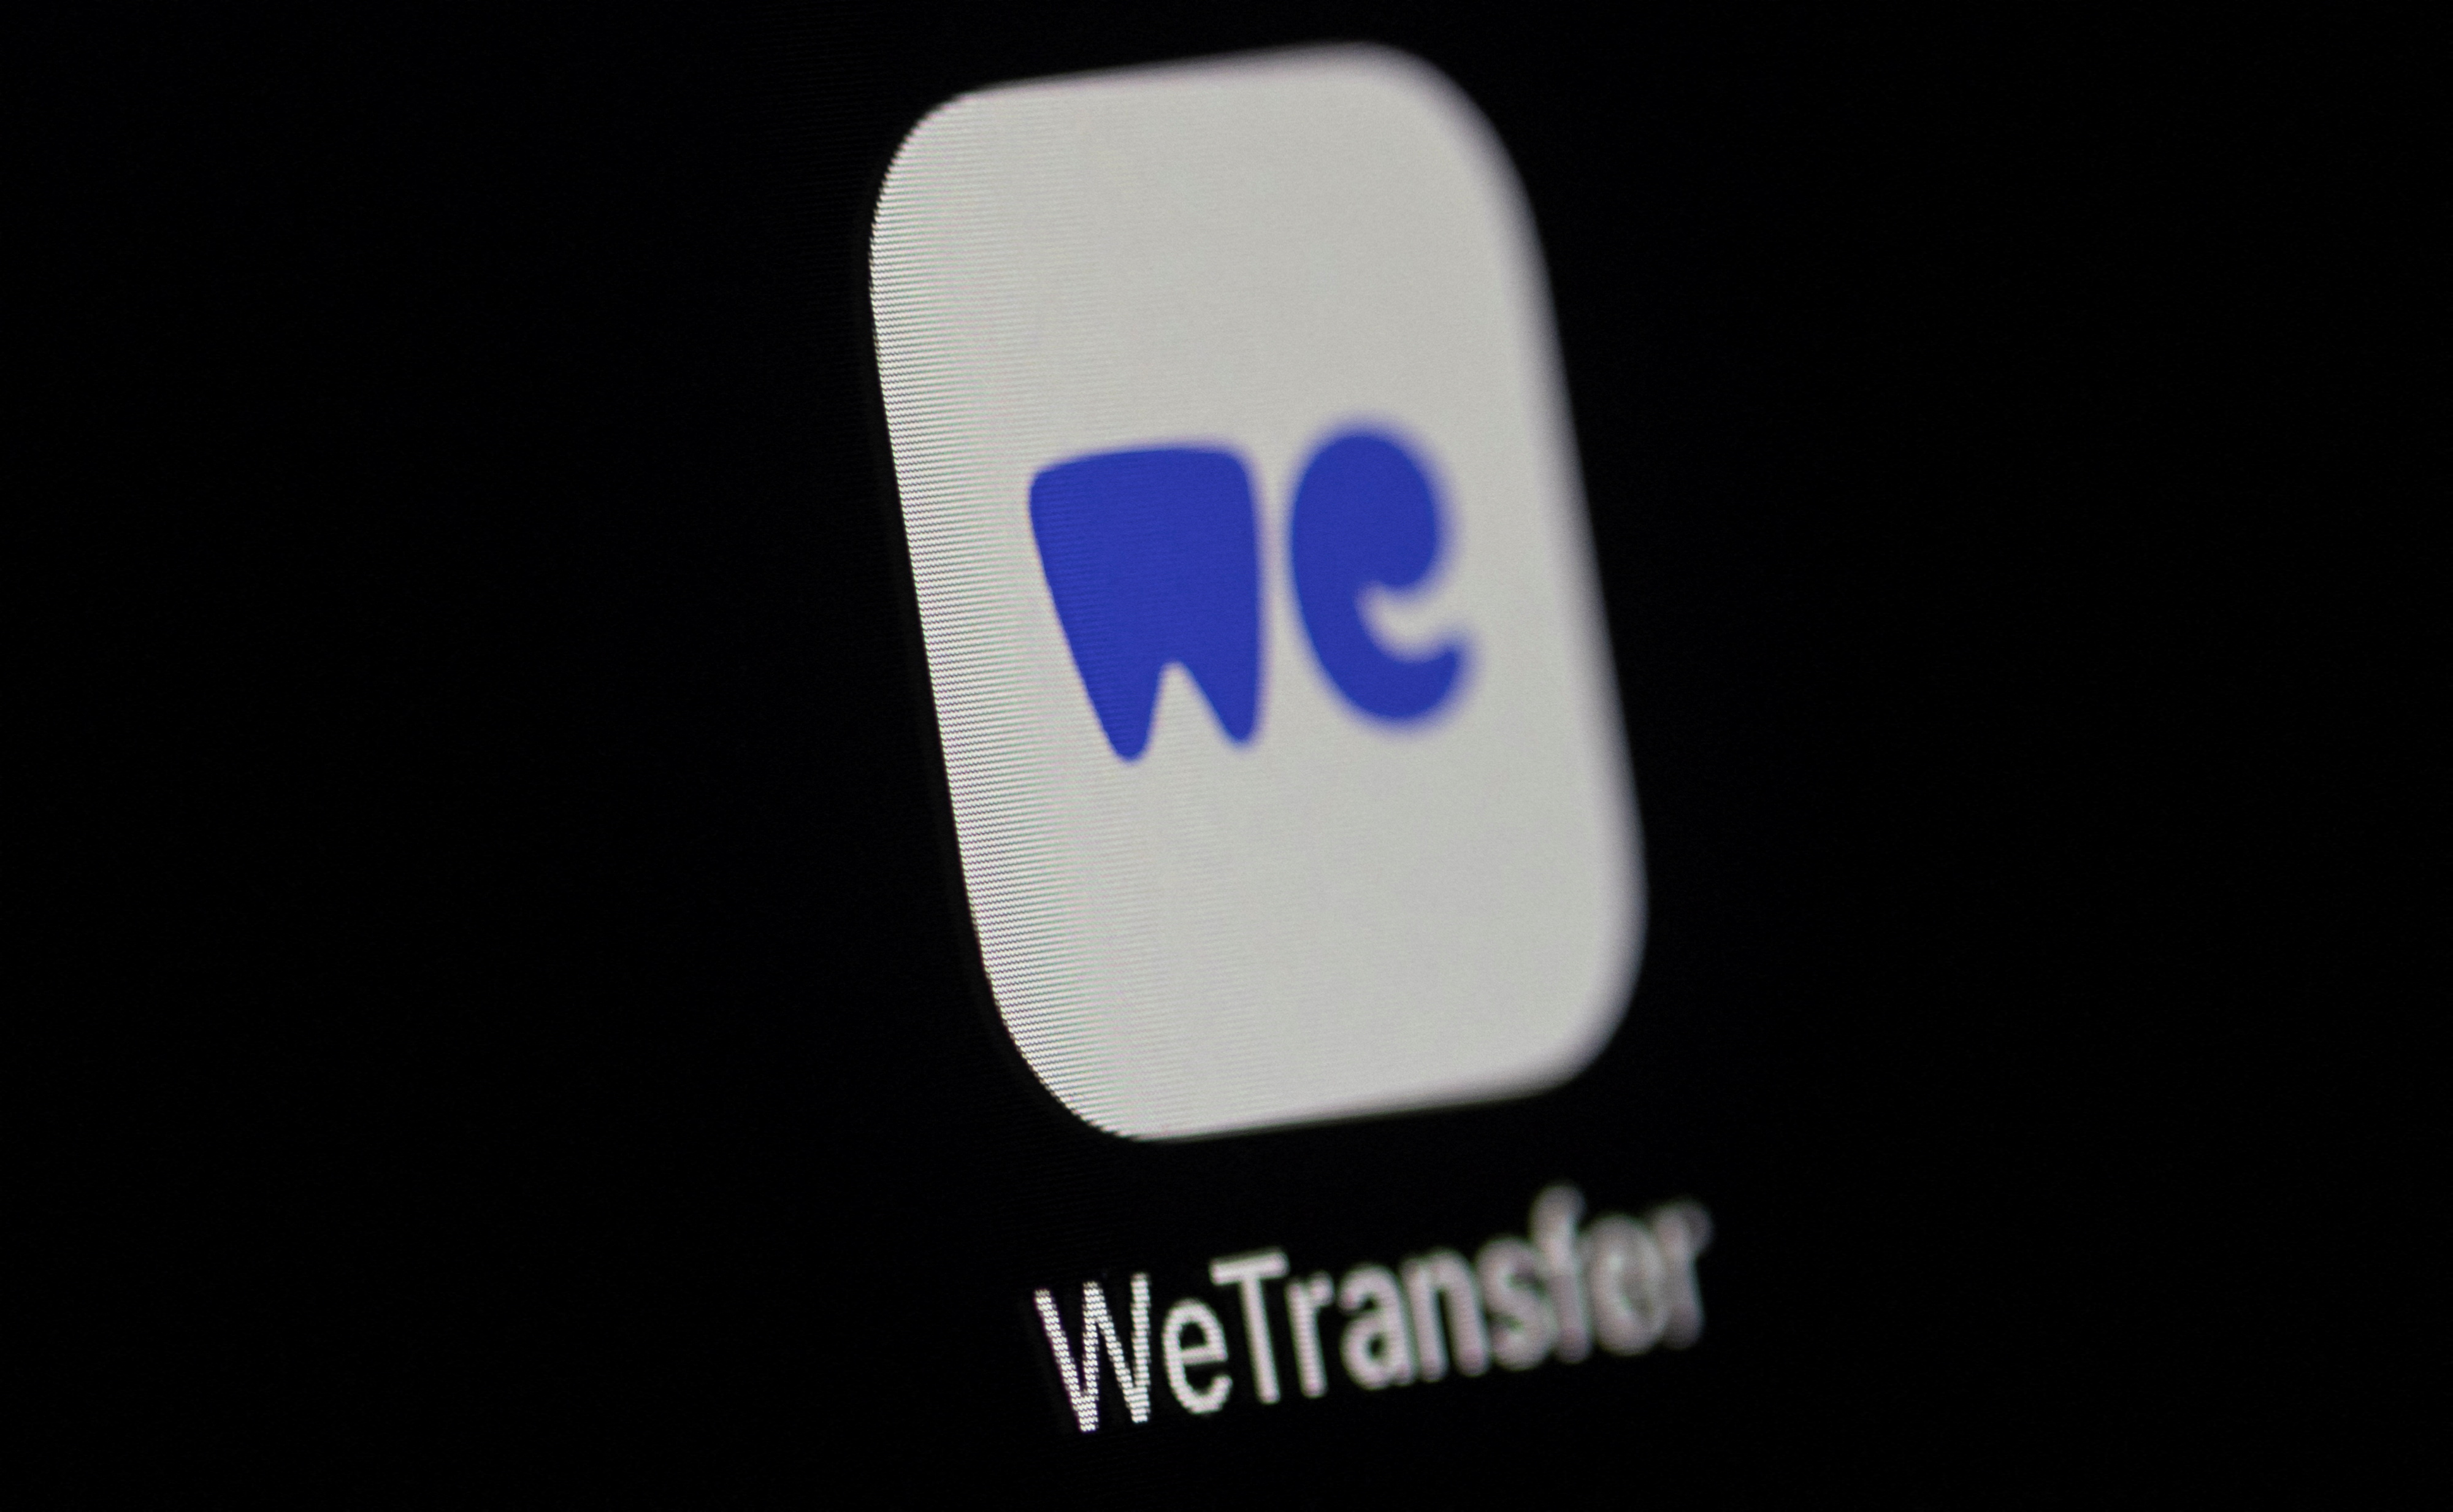 Illustration shows WeTransfer app logo